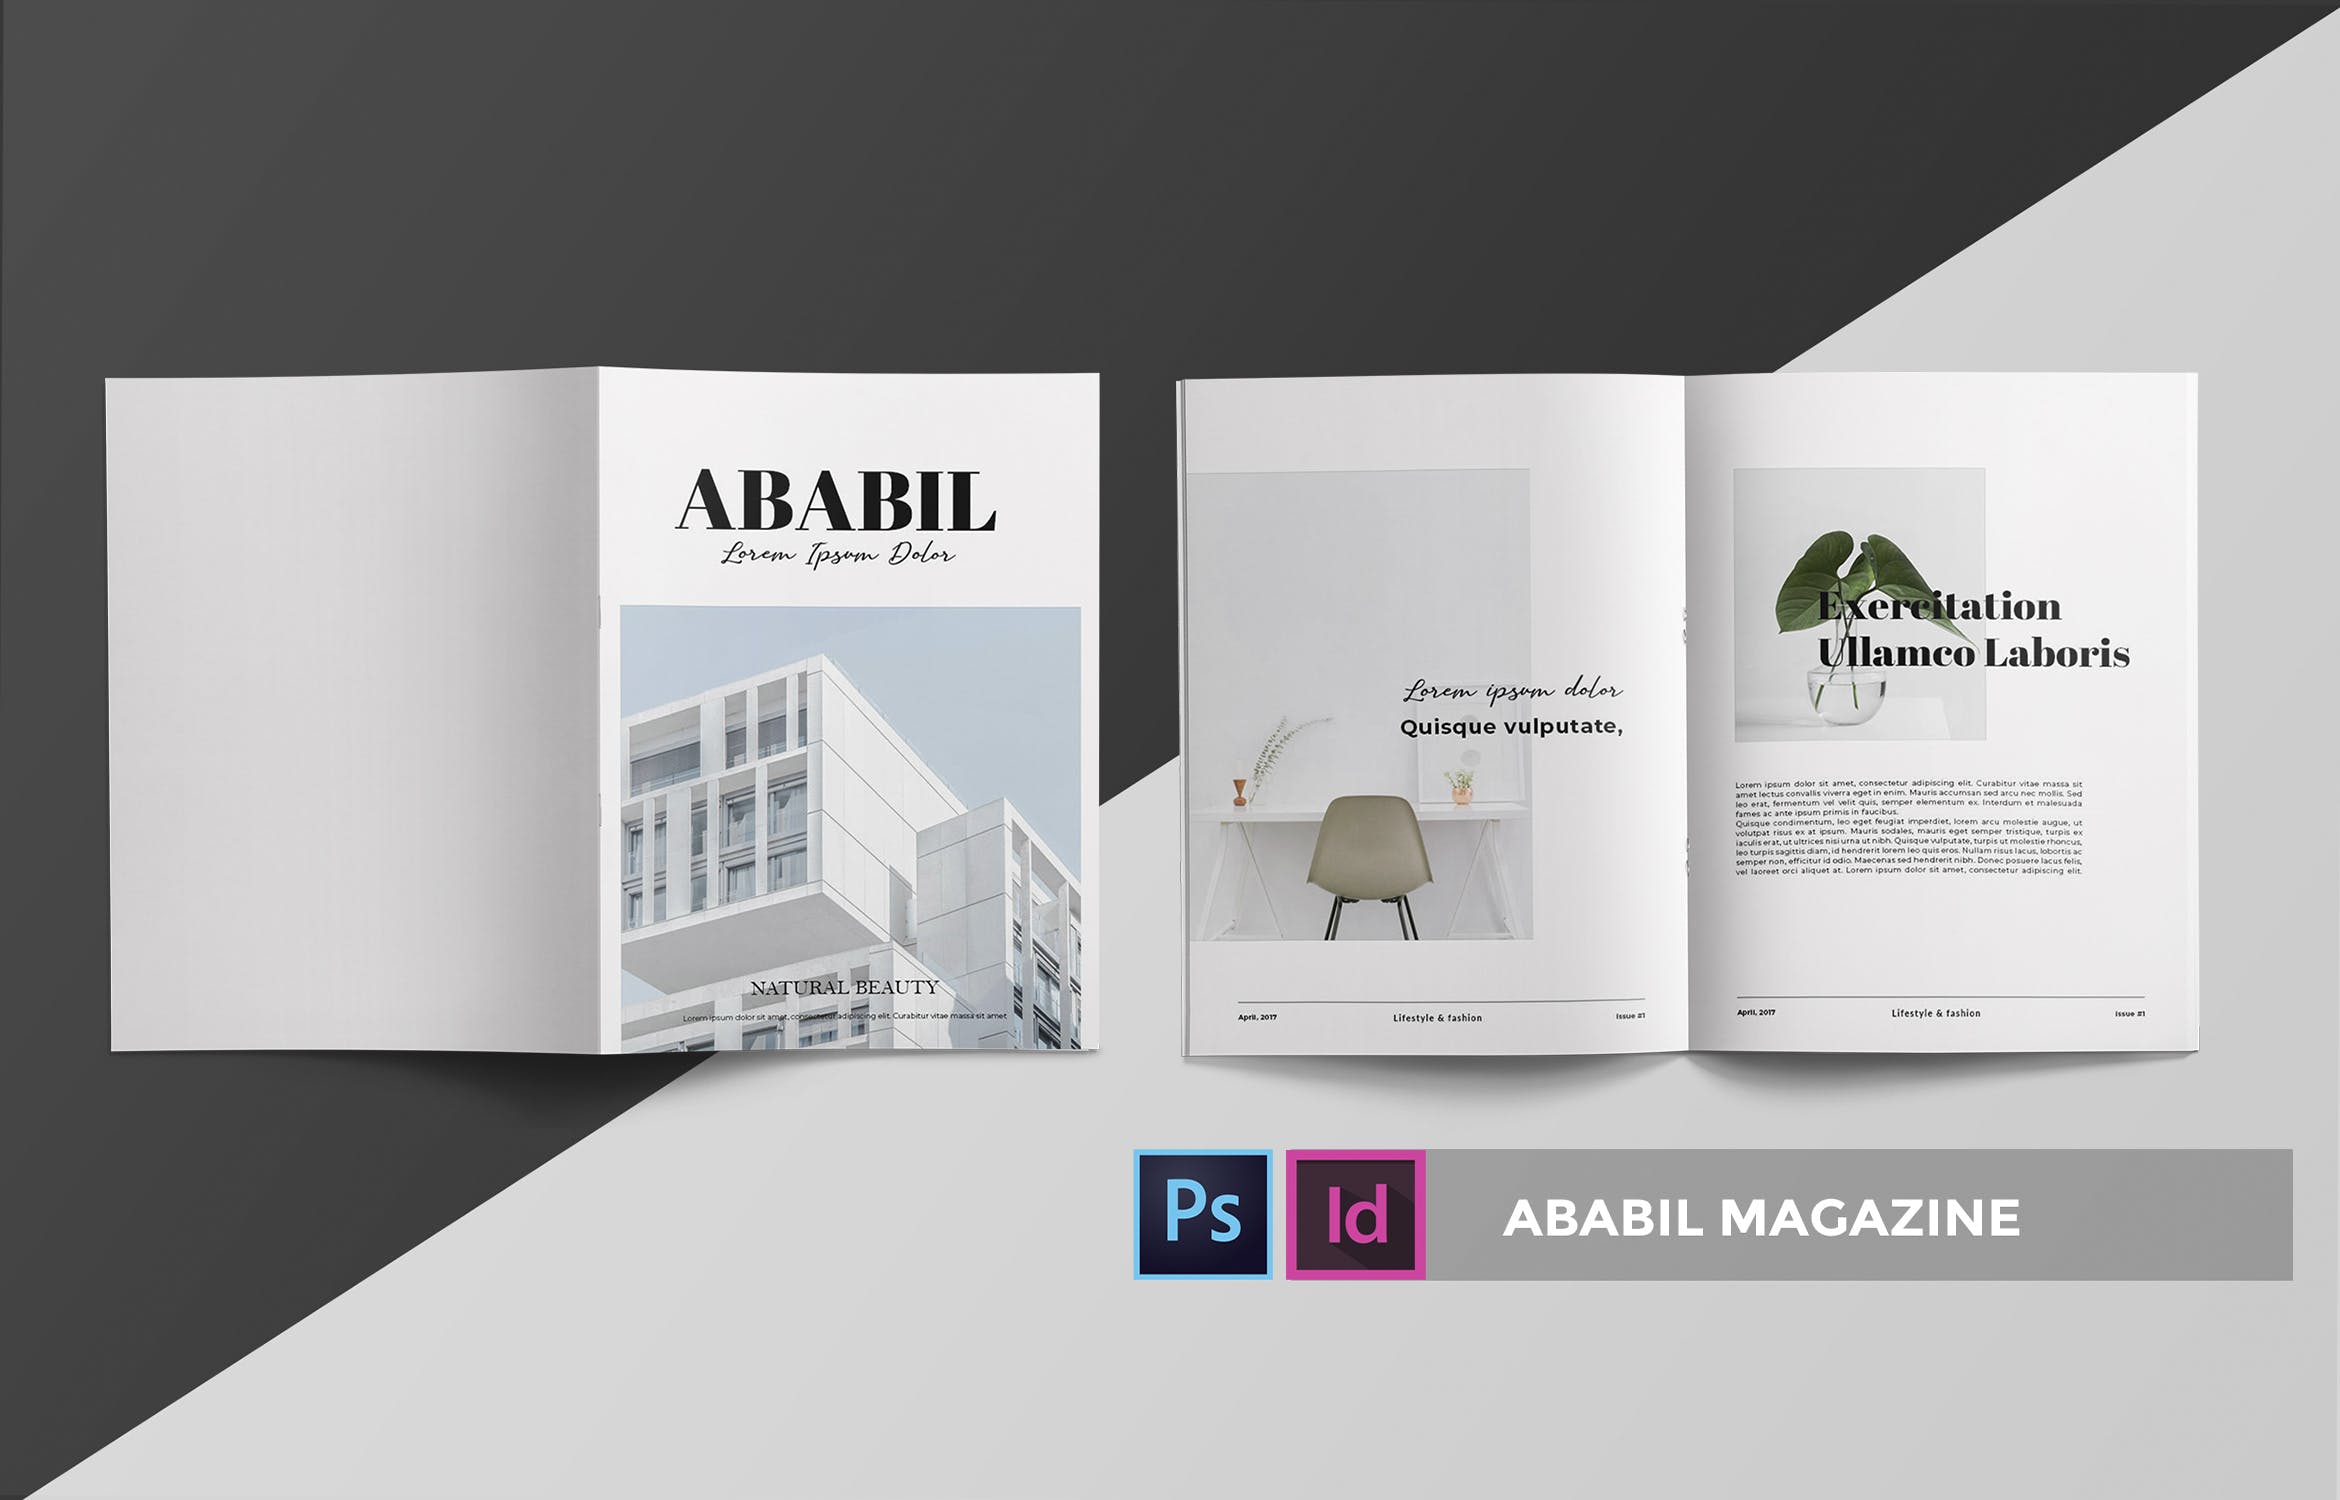 高端建筑/设计/房地产主题蚂蚁素材精选杂志排版设计INDD模板 ABABIL | Magazine Template插图(2)